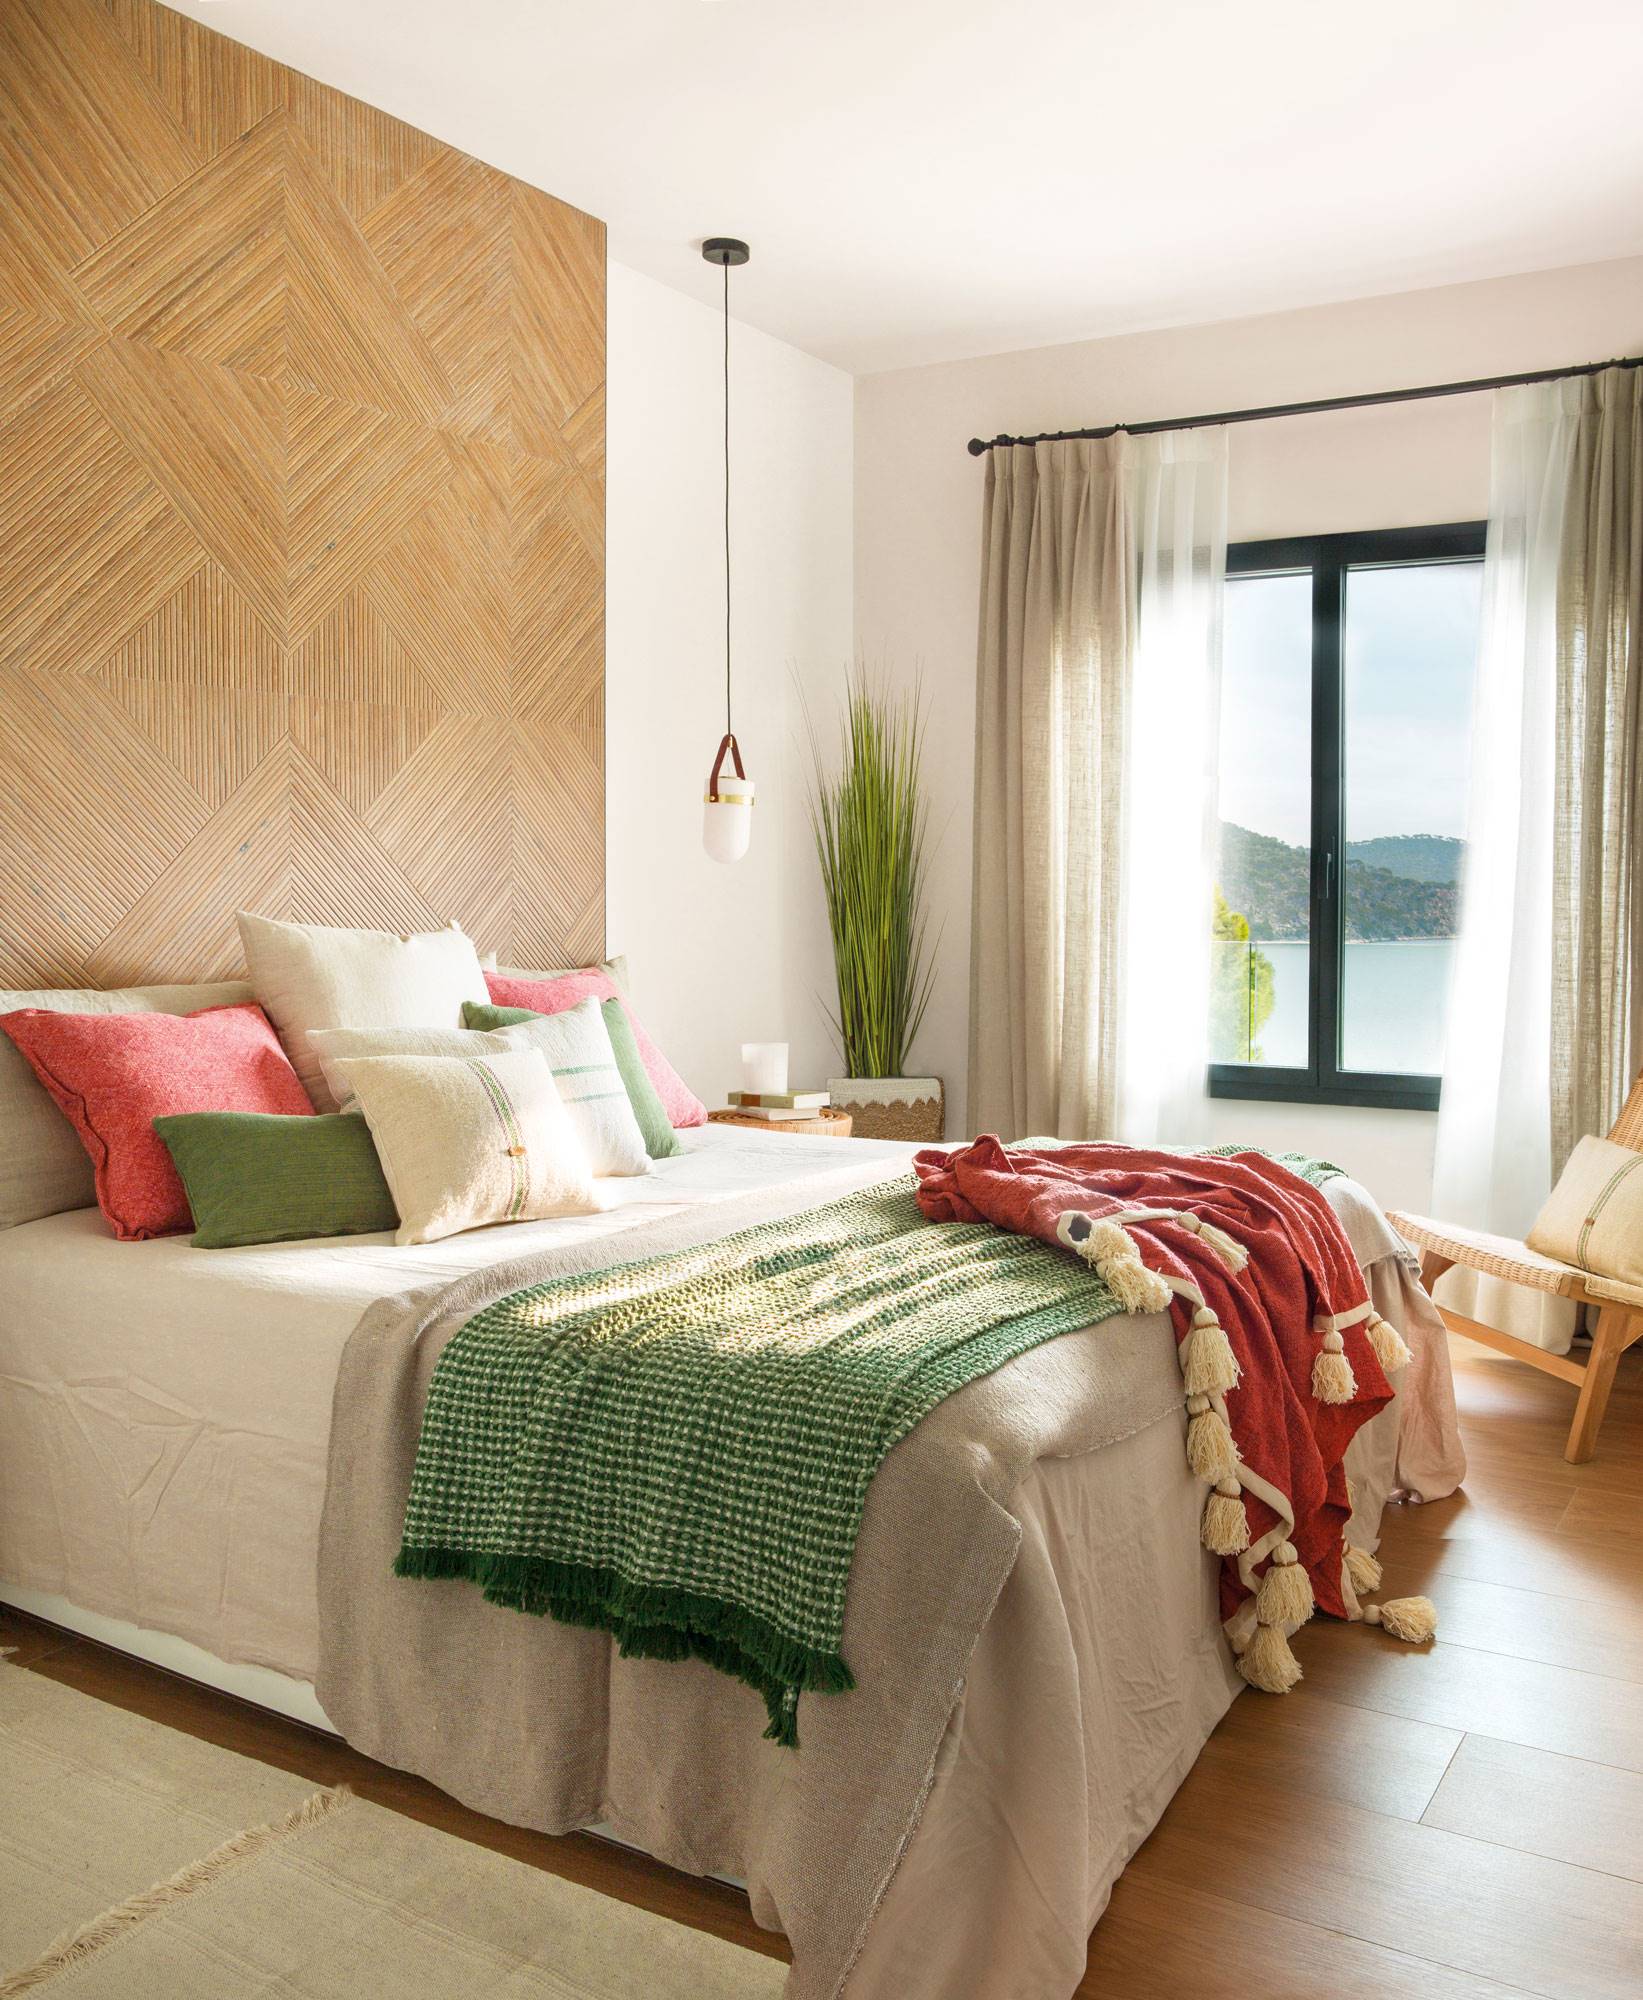 Dormitorio con cabecero revestido de baldosa que imita la madera.